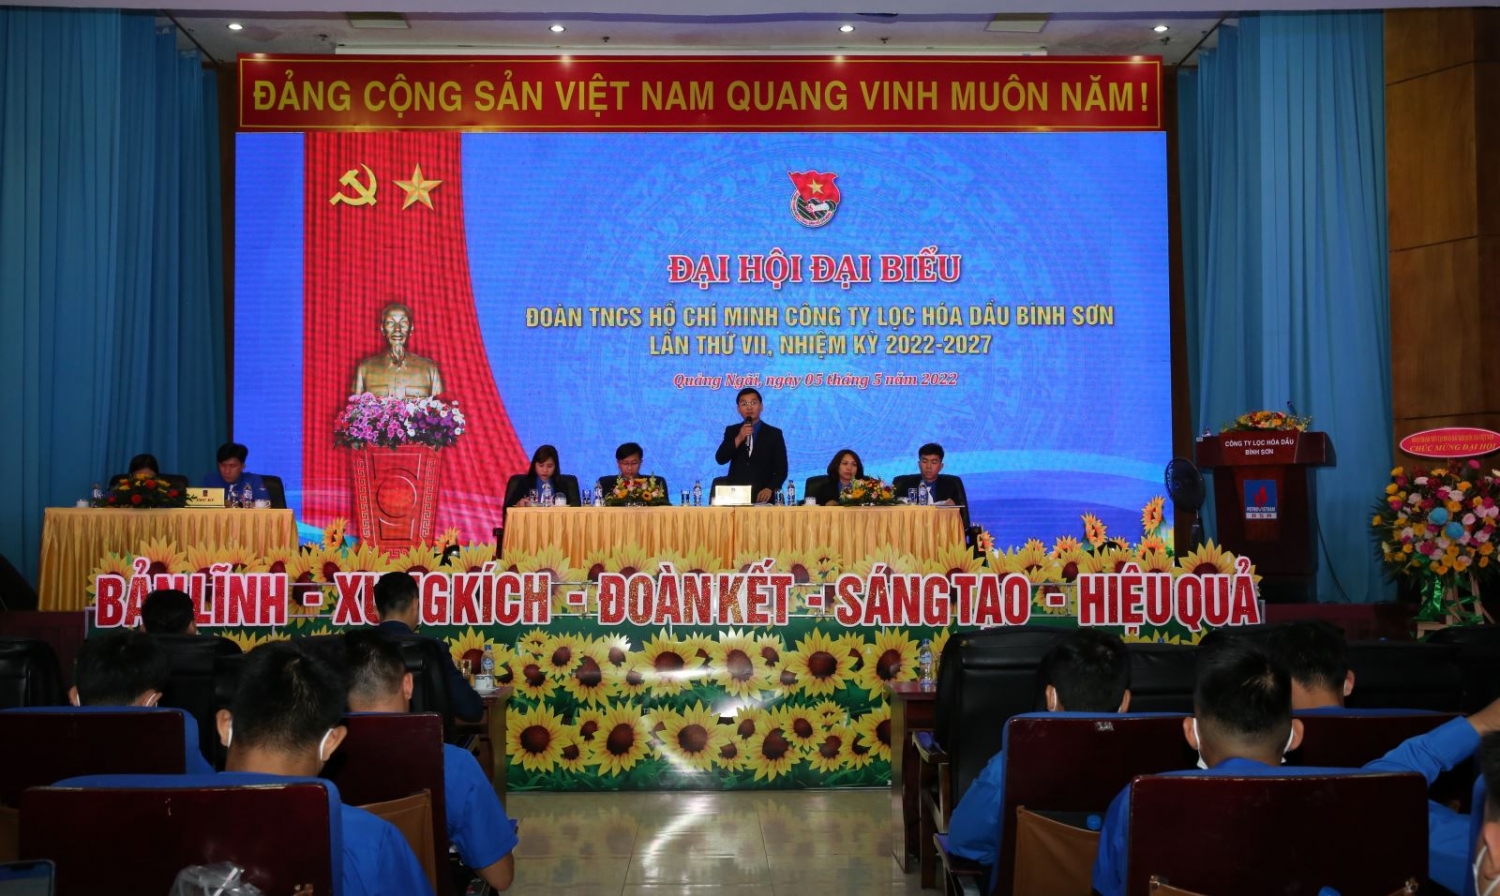 Đoàn TNCS Hồ Chí Minh Công ty BSR tổ chức Đại hội đại biểu lần thứ VII nhiệm kỳ 2022 – 2027